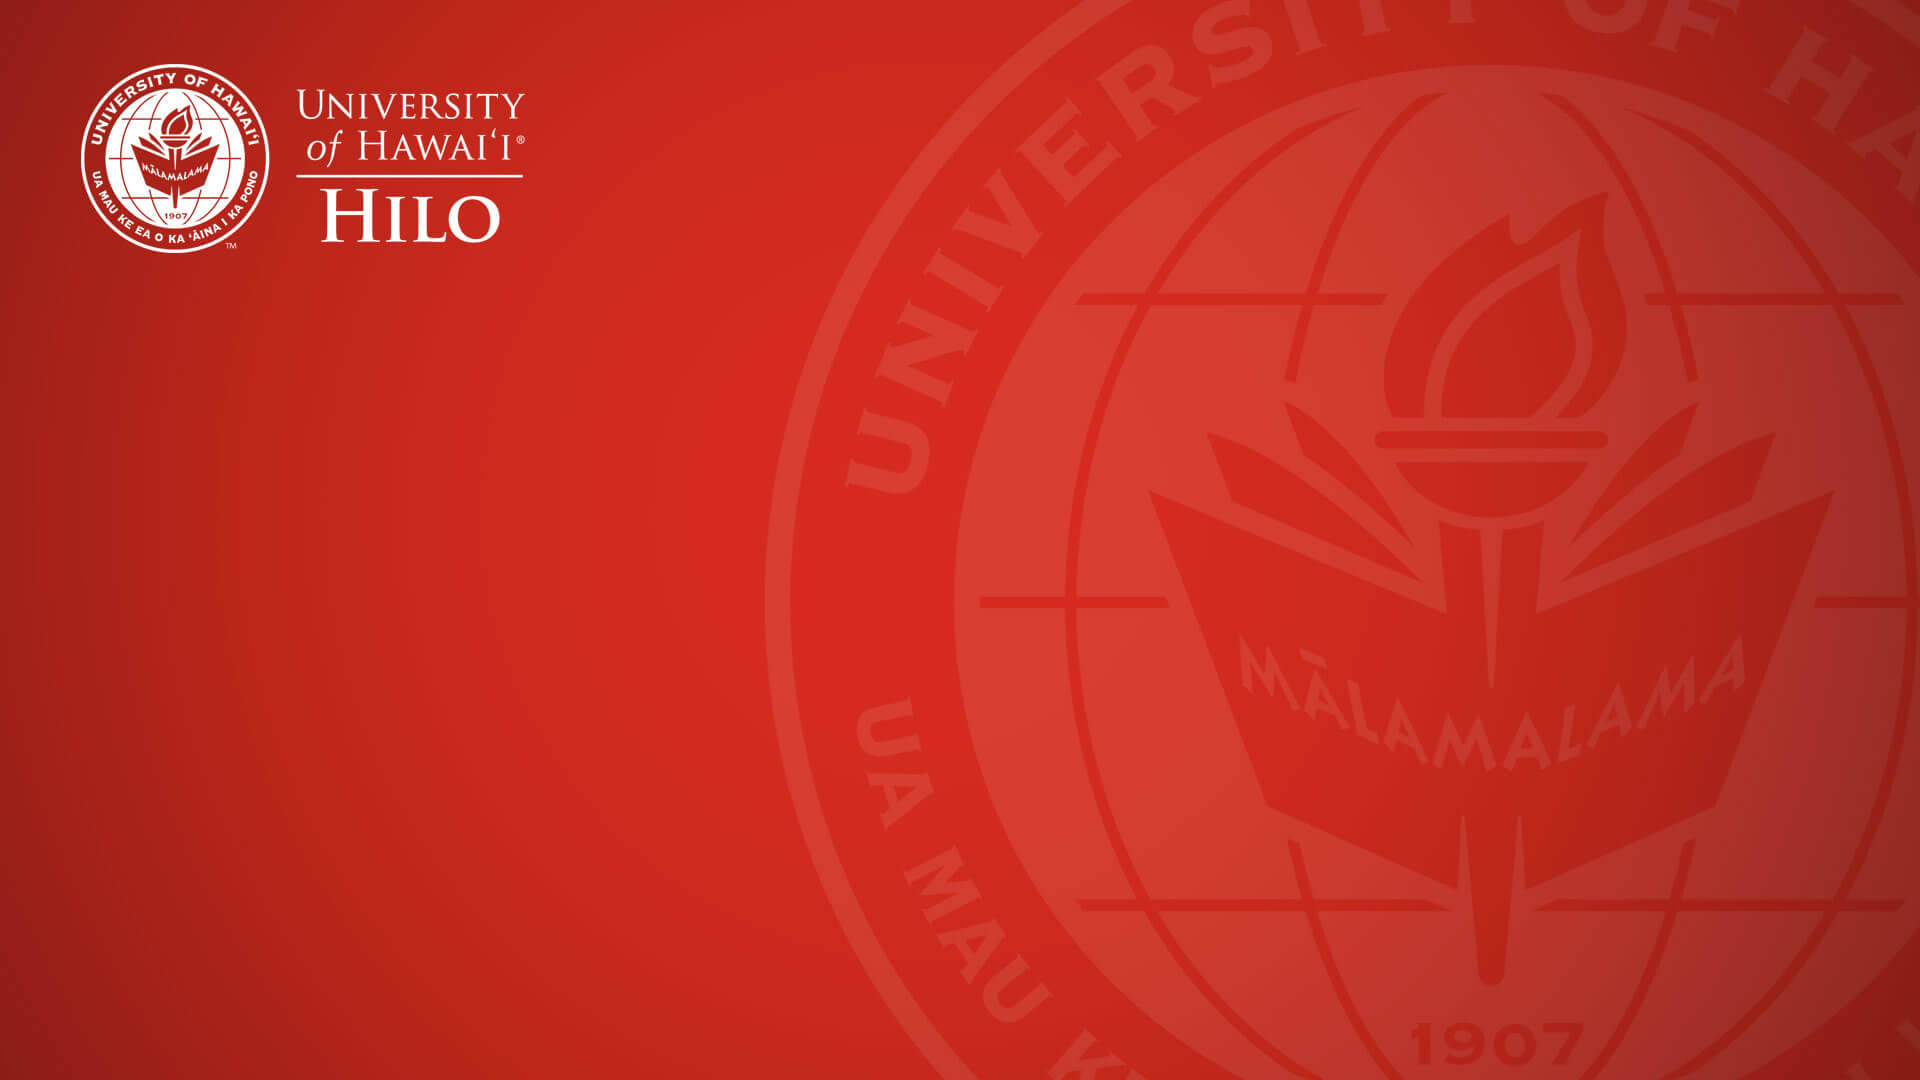 Logode La Universidad De Hawaii Hilo En Color Rojo Fondo de pantalla